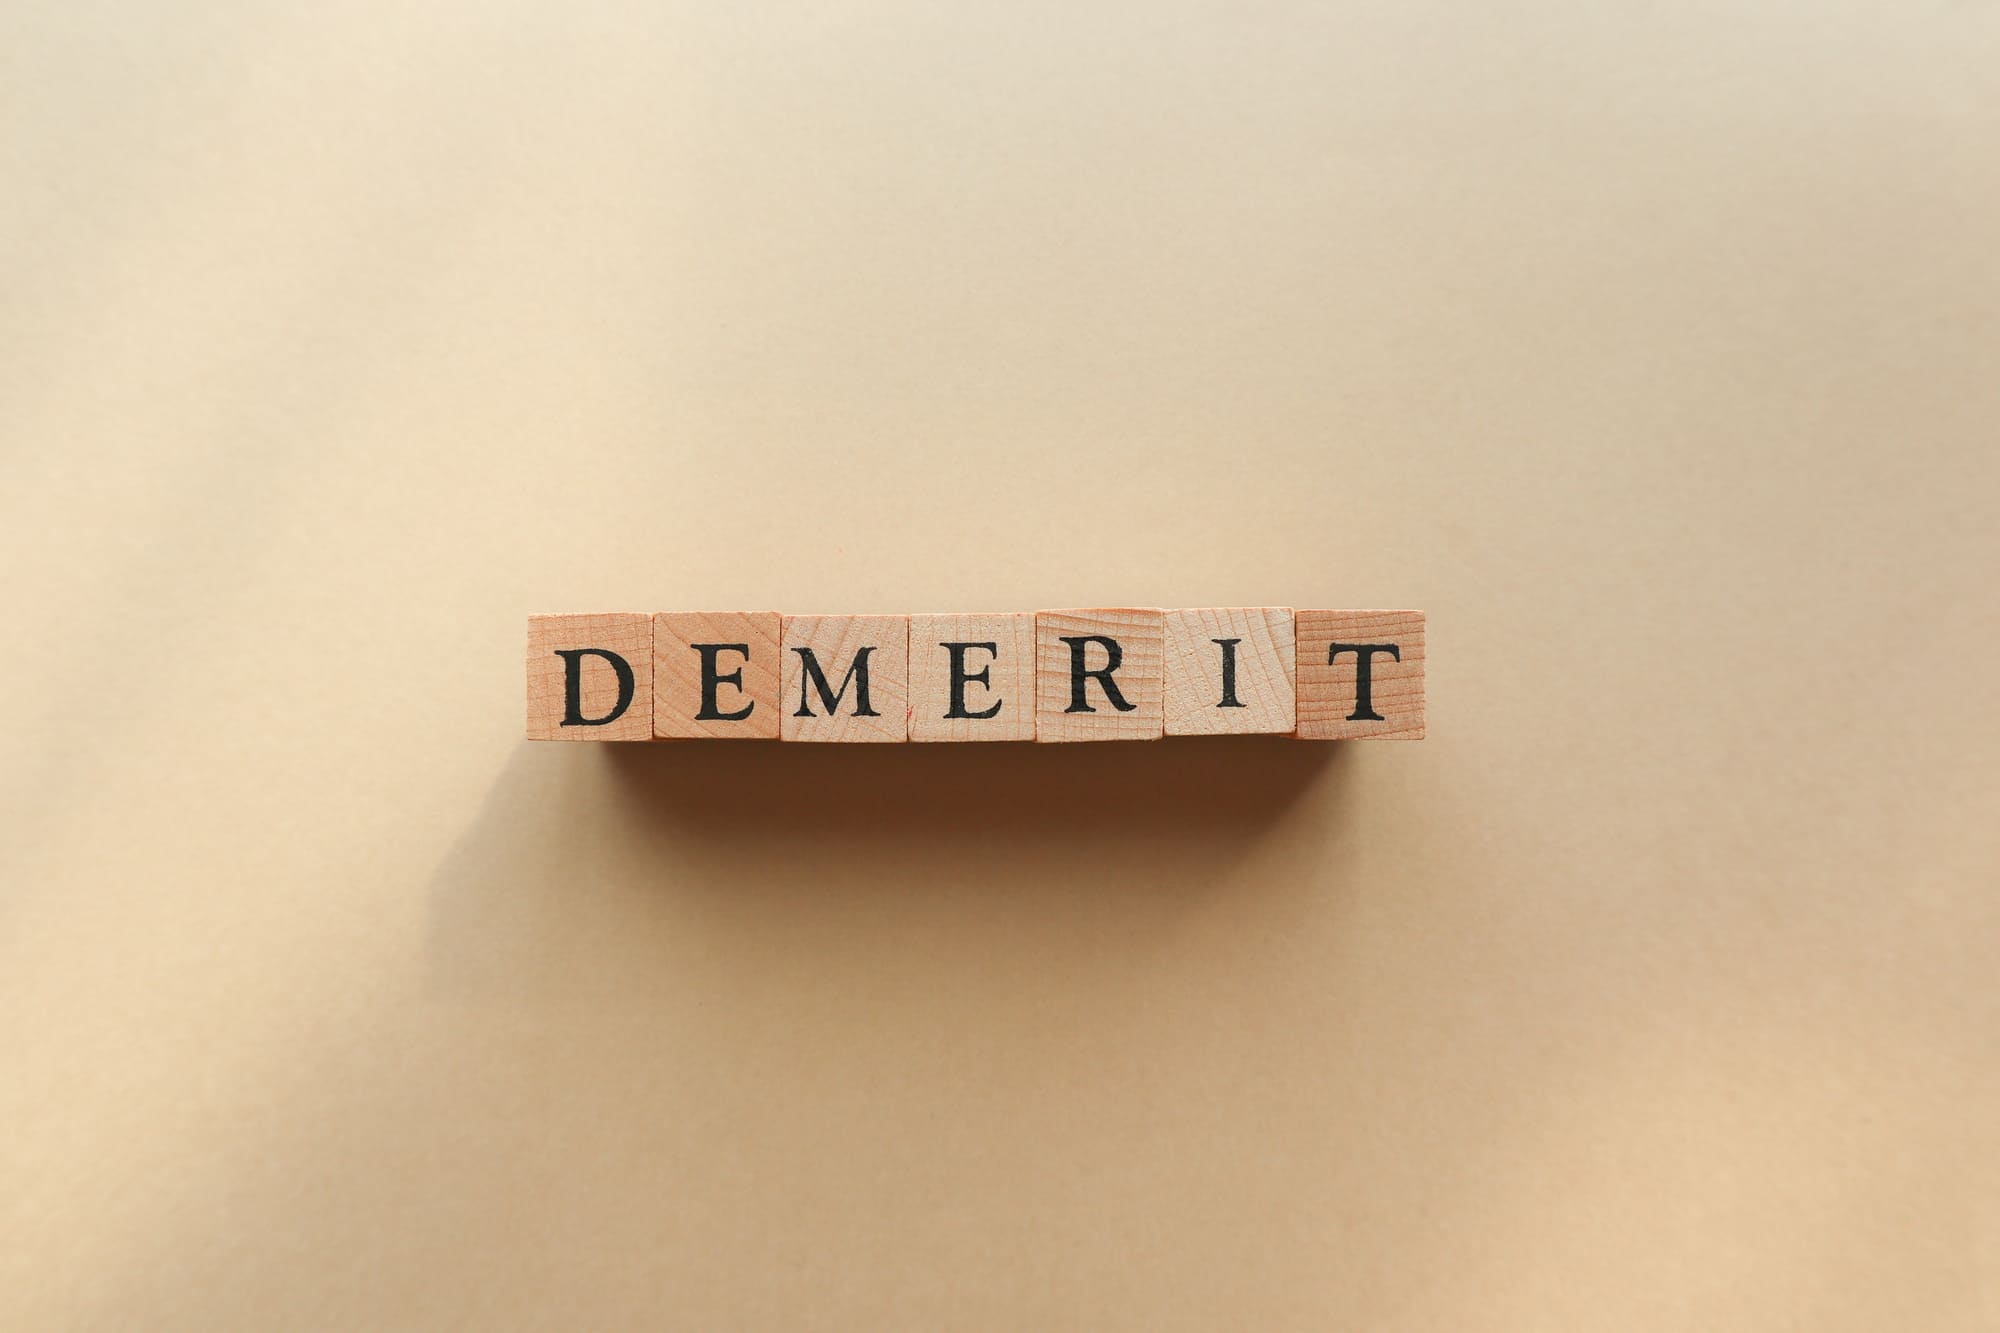 「DEMERIT」と書かれた積木